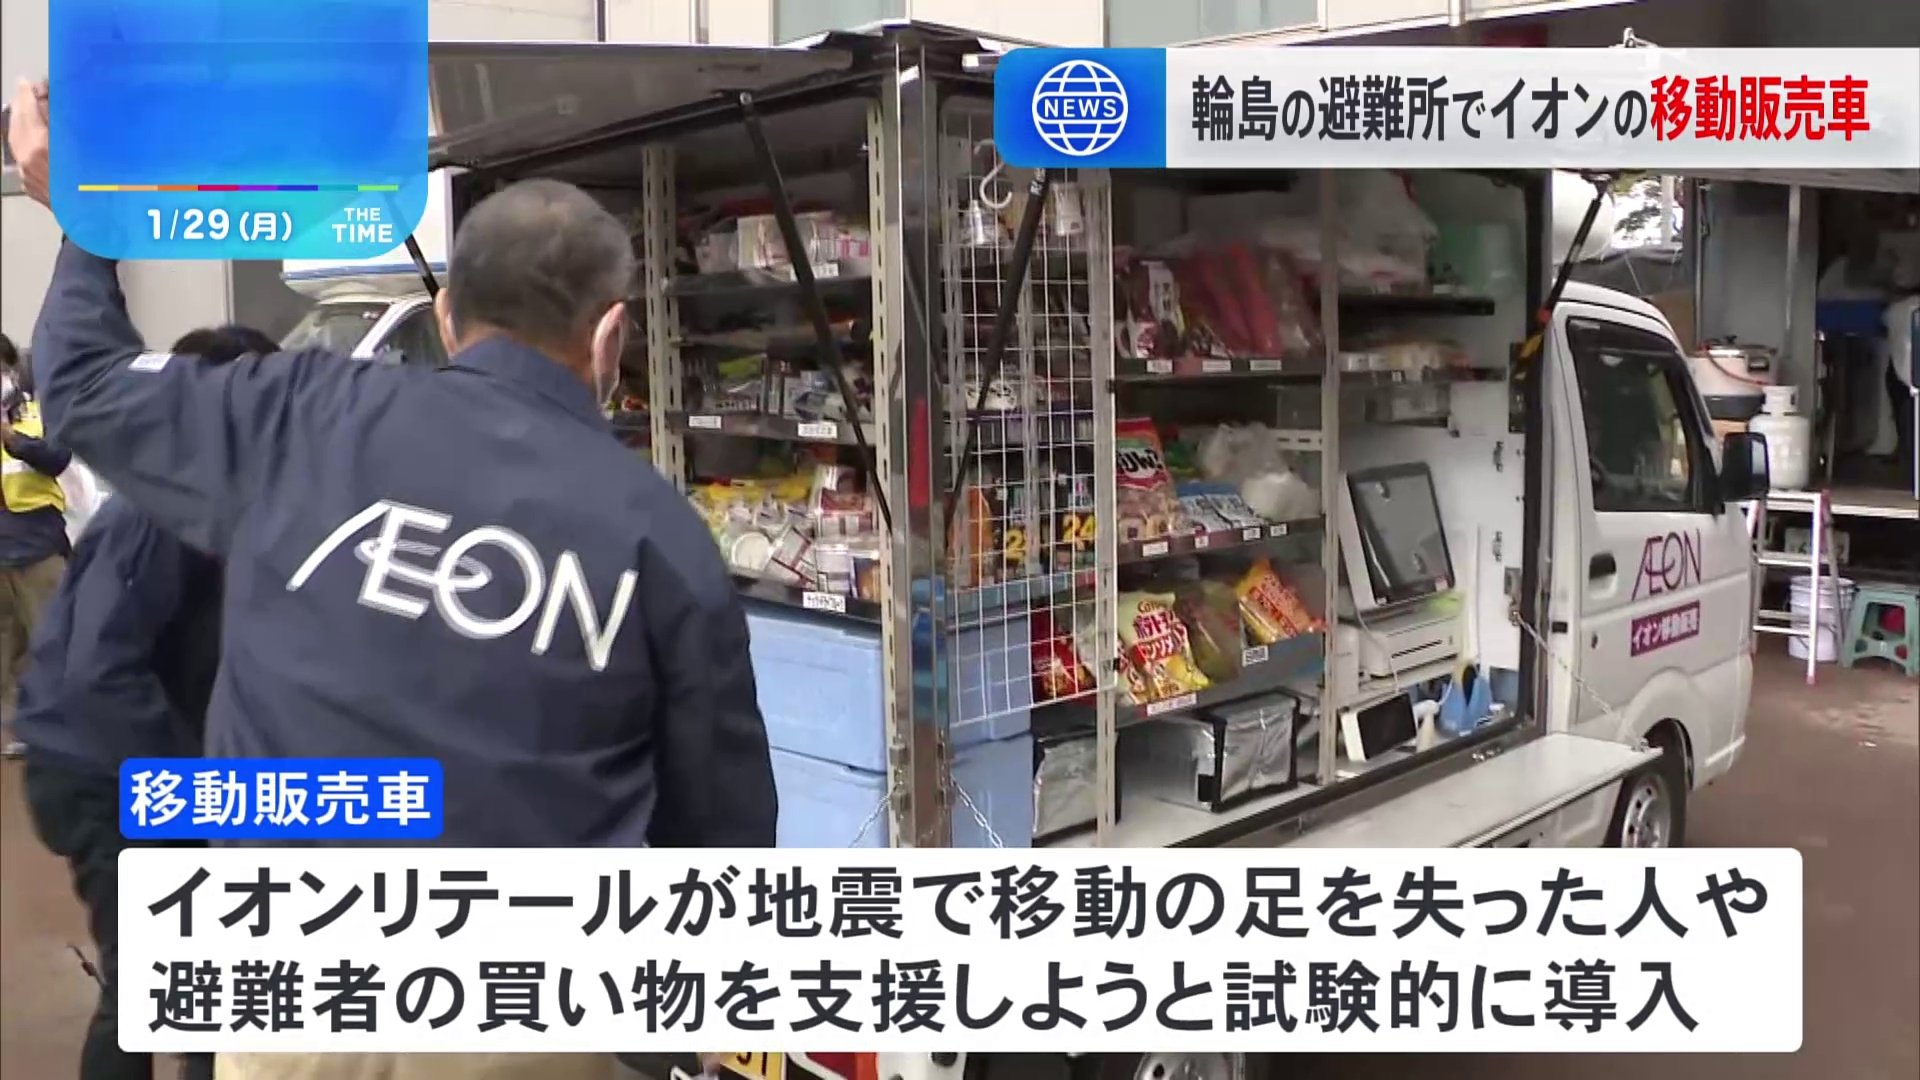 被災地の石川県内で初　輪島市の避難所でイオンの移動販売車が運行開始　能登半島地震